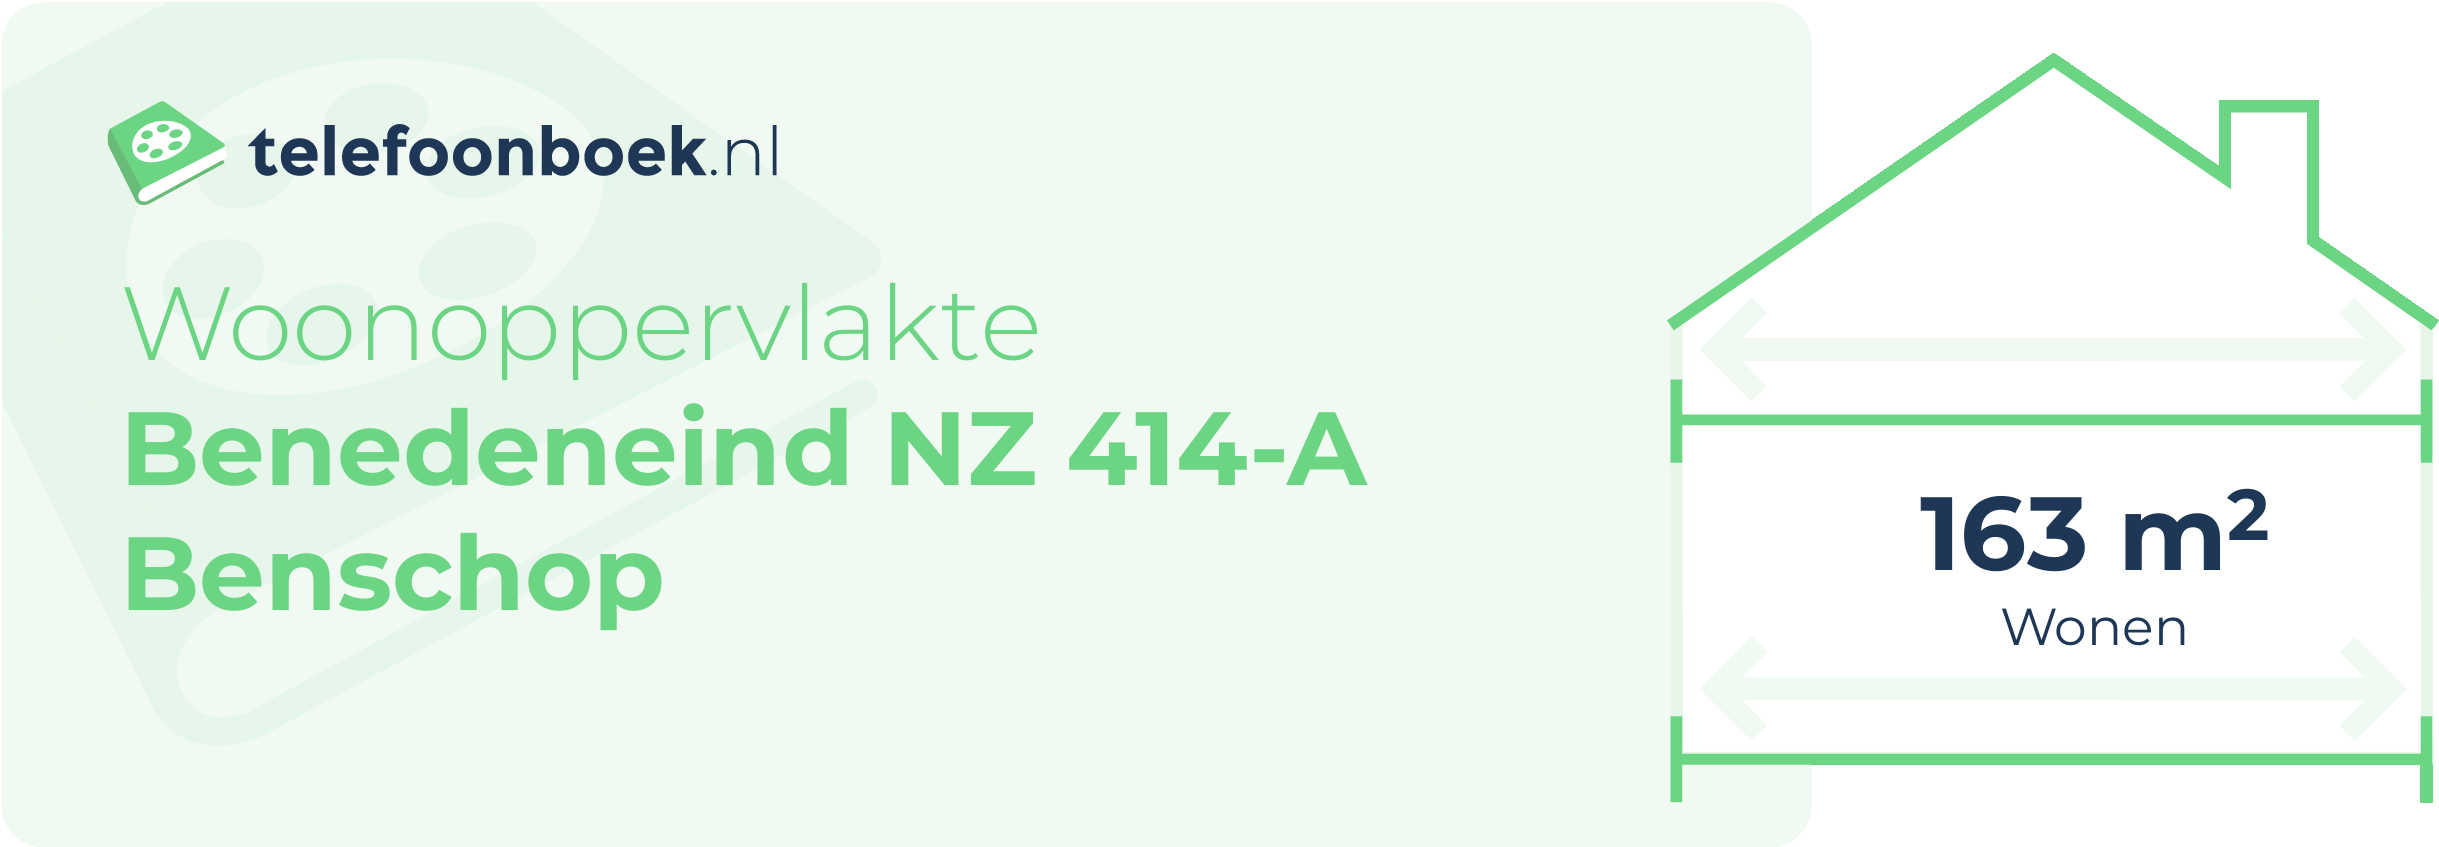 Woonoppervlakte Benedeneind NZ 414-A Benschop